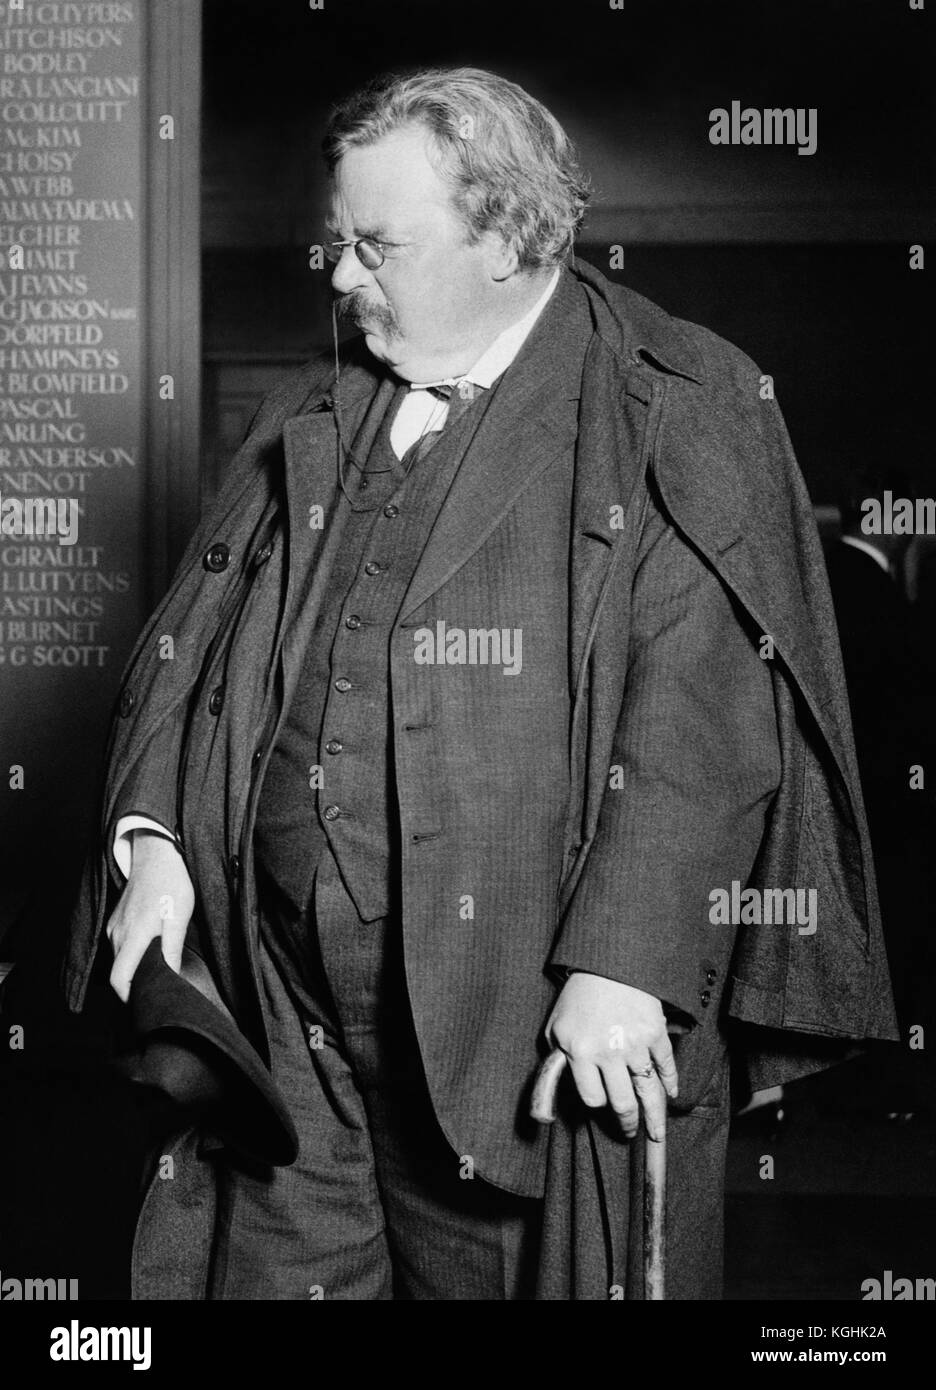 Gilbert Keith Chesterton (1874 - 1936), bekannt als G.K. Chesterton, 1925 mit charakteristischem zerknittertem Hut, Umhang und Stock (Schwertstab). Chesterton war ein englischer Schriftsteller, Philosoph, Dramatiker, Dichter, Journalist, Redner, Laientheologe, Biograph, christlicher Apologe, Literatur- und Kunstkritiker. Er ist vor allem bekannt für Werke wie die Orthodoxie (1908), die Geschichten von Pater Brown (1910-1935), der ewige Mann (1925), der Mann, der Donnerstag war (1908) und der Napoleon von Notting Hill (1904). Stockfoto